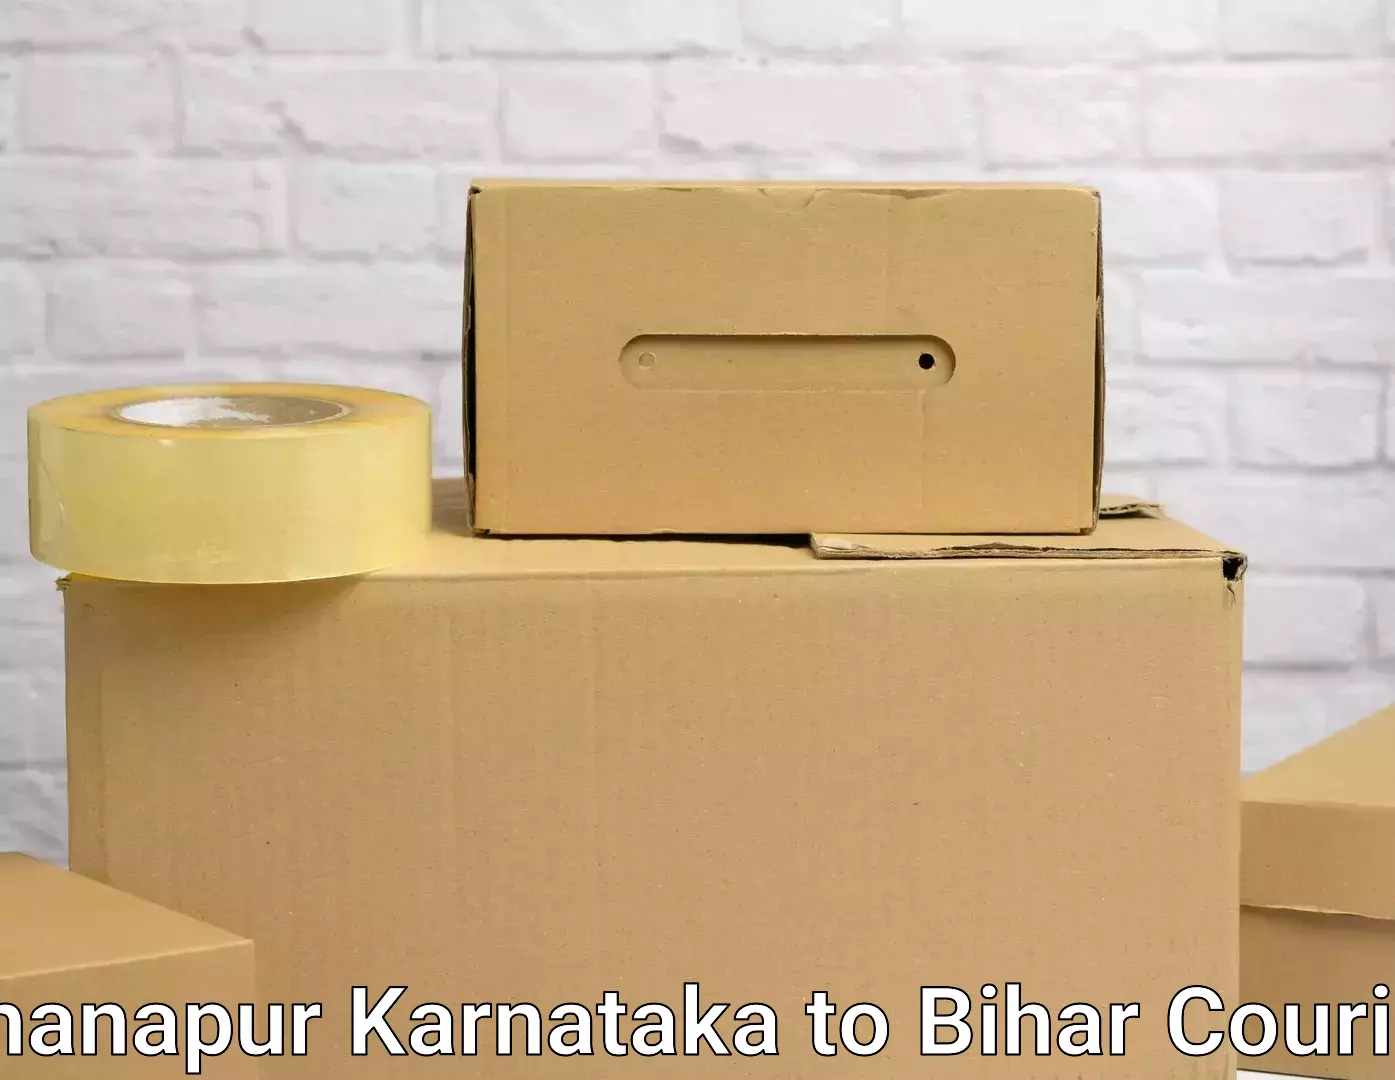 Premium moving services Khanapur Karnataka to Samastipur